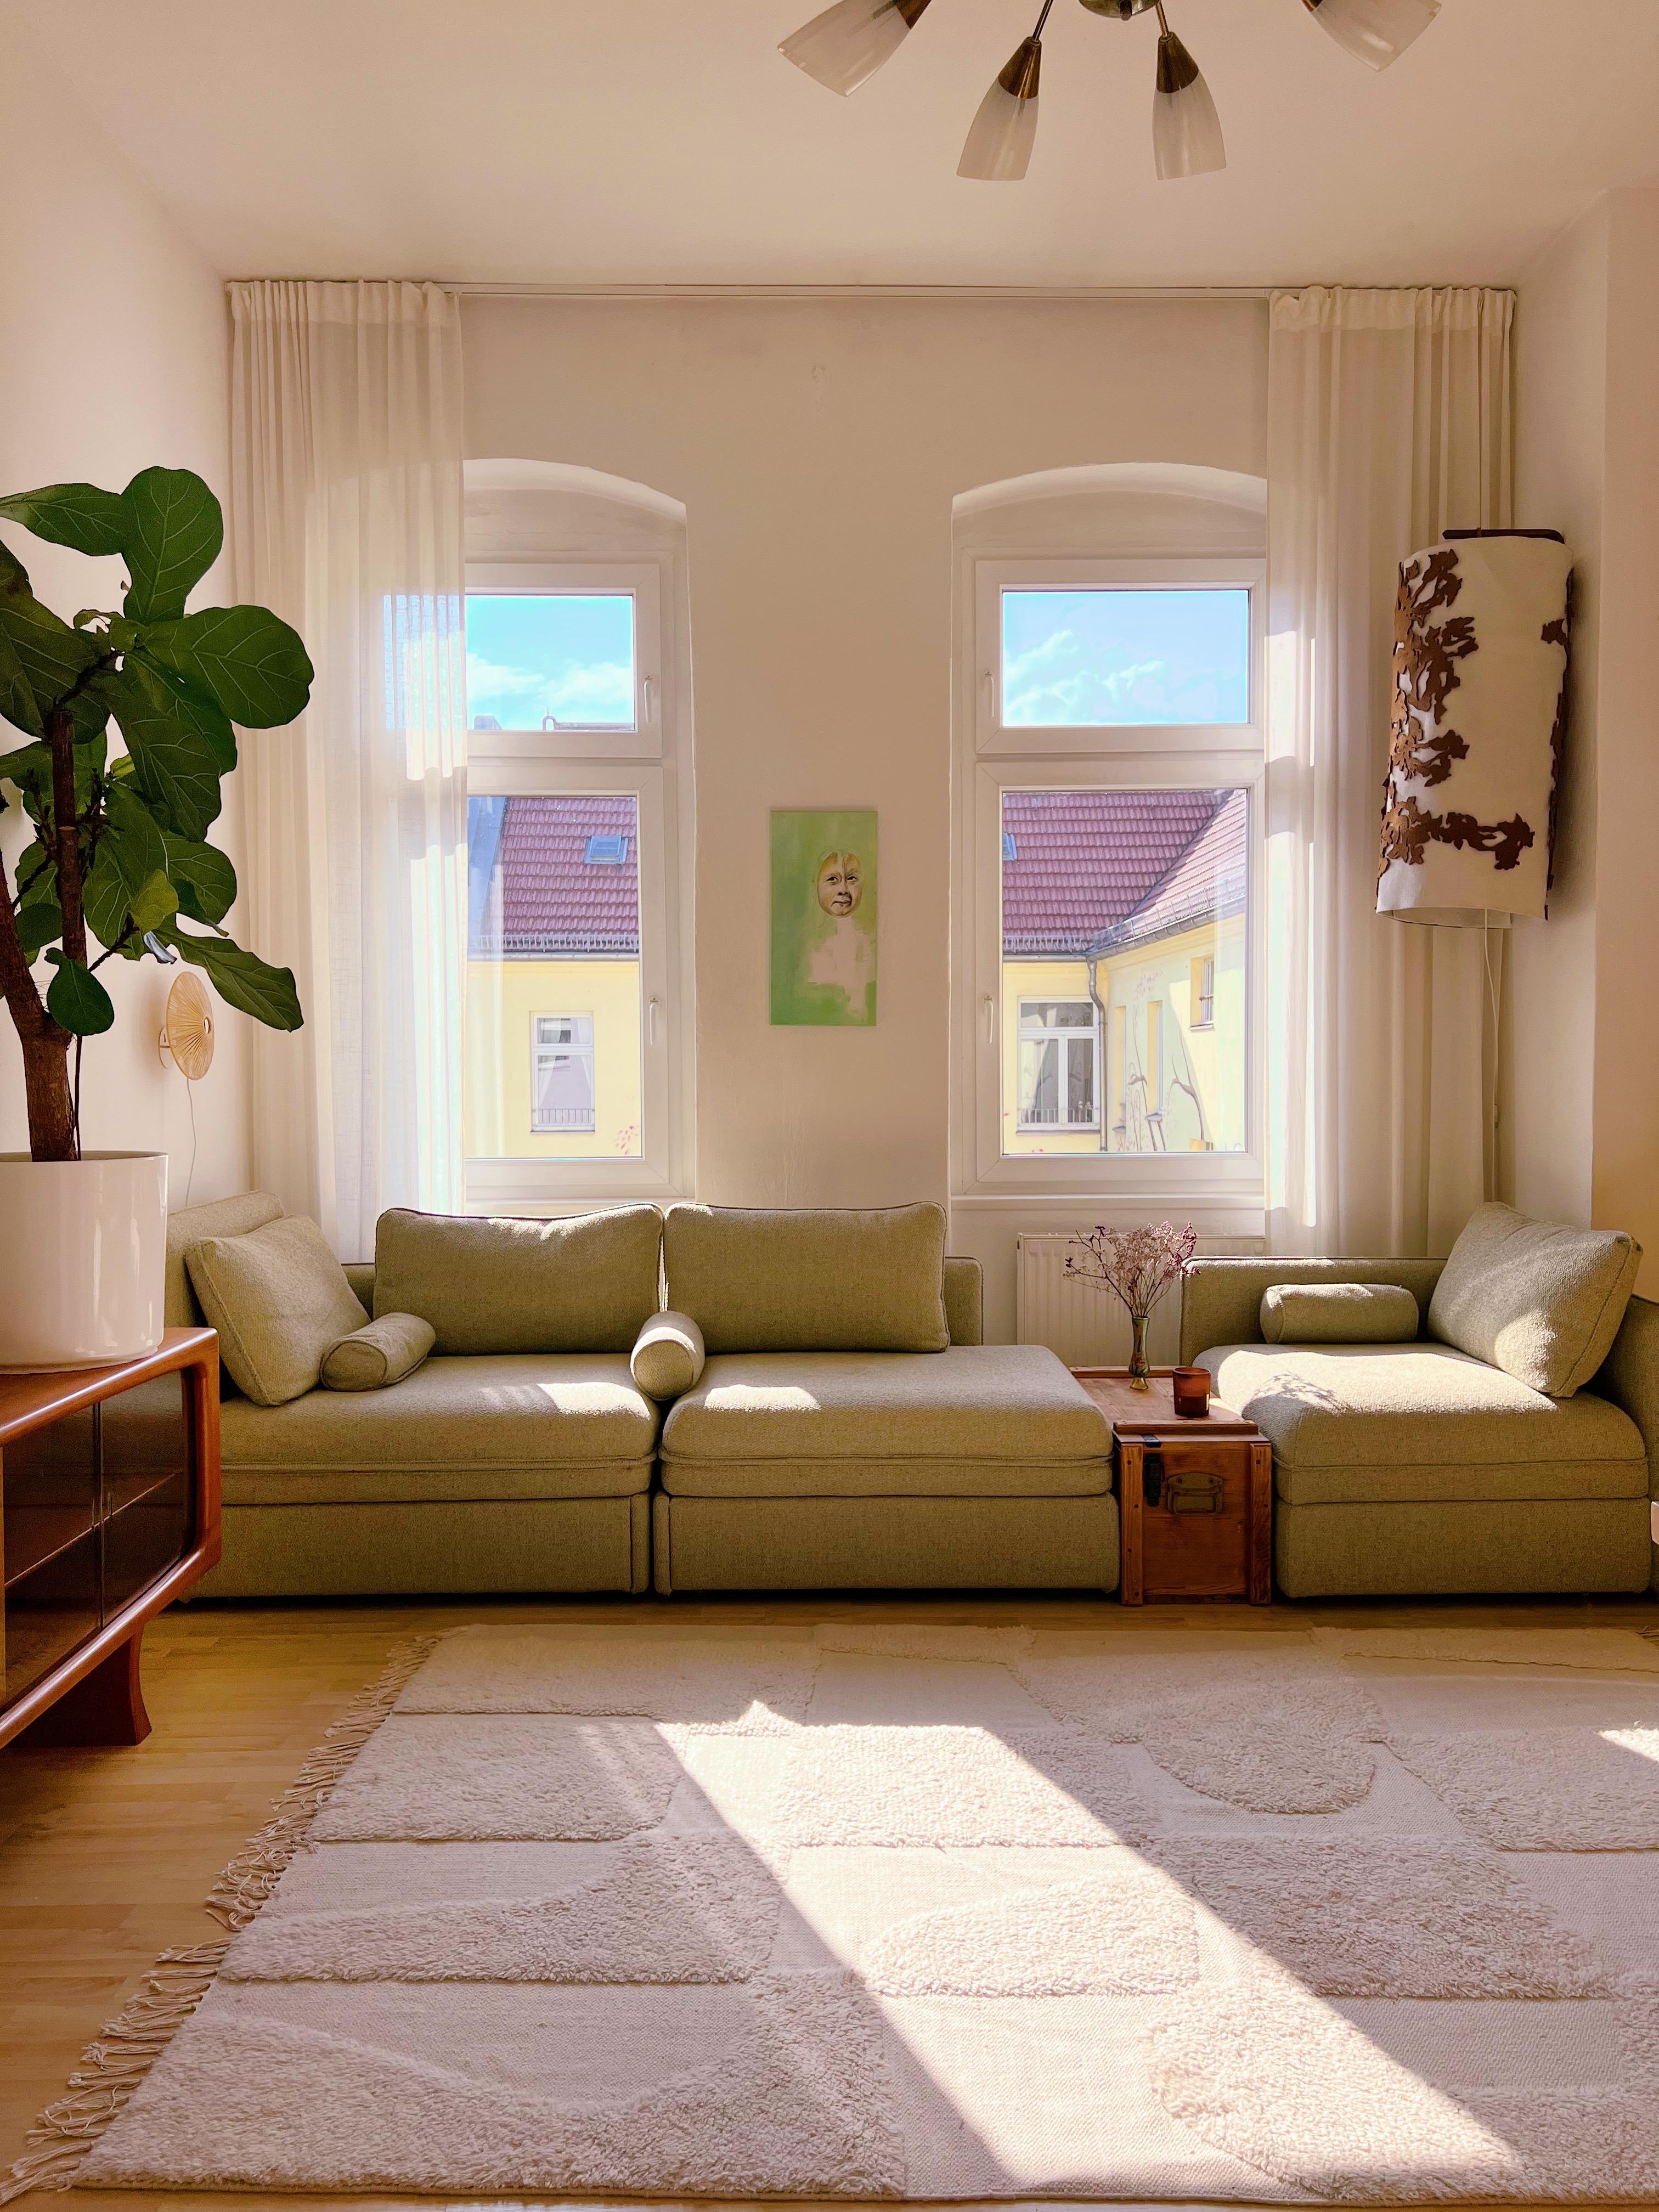 Sonnenzimmer 🤤
#sonne #boucle #sonnenzimmer #couch #sofa #geigenfeige #Midcenturymodern